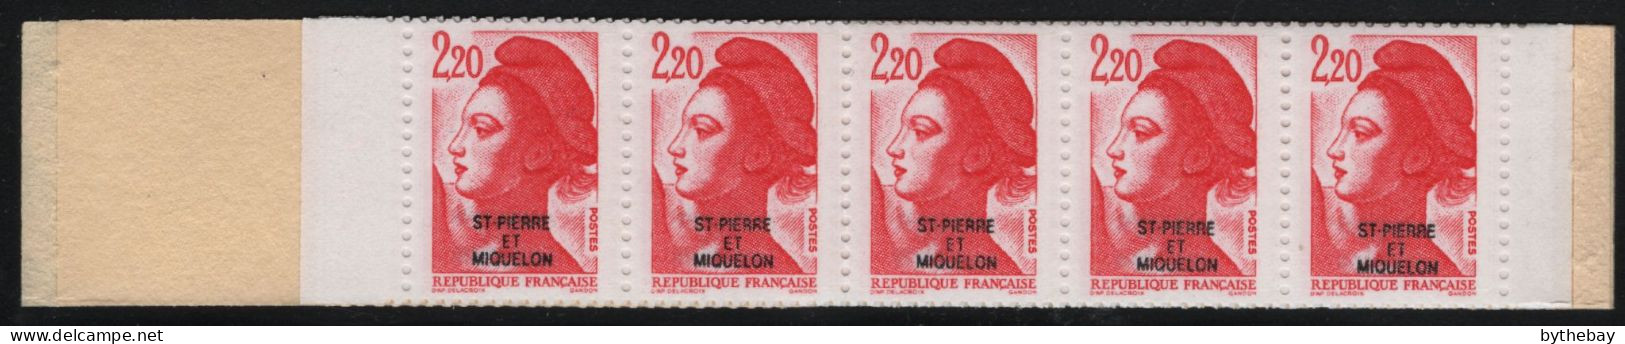 St Pierre Et Miquelon 1986 MNH Sc 462 2.20fr Marianne O/P Booklet (1) - Carnets